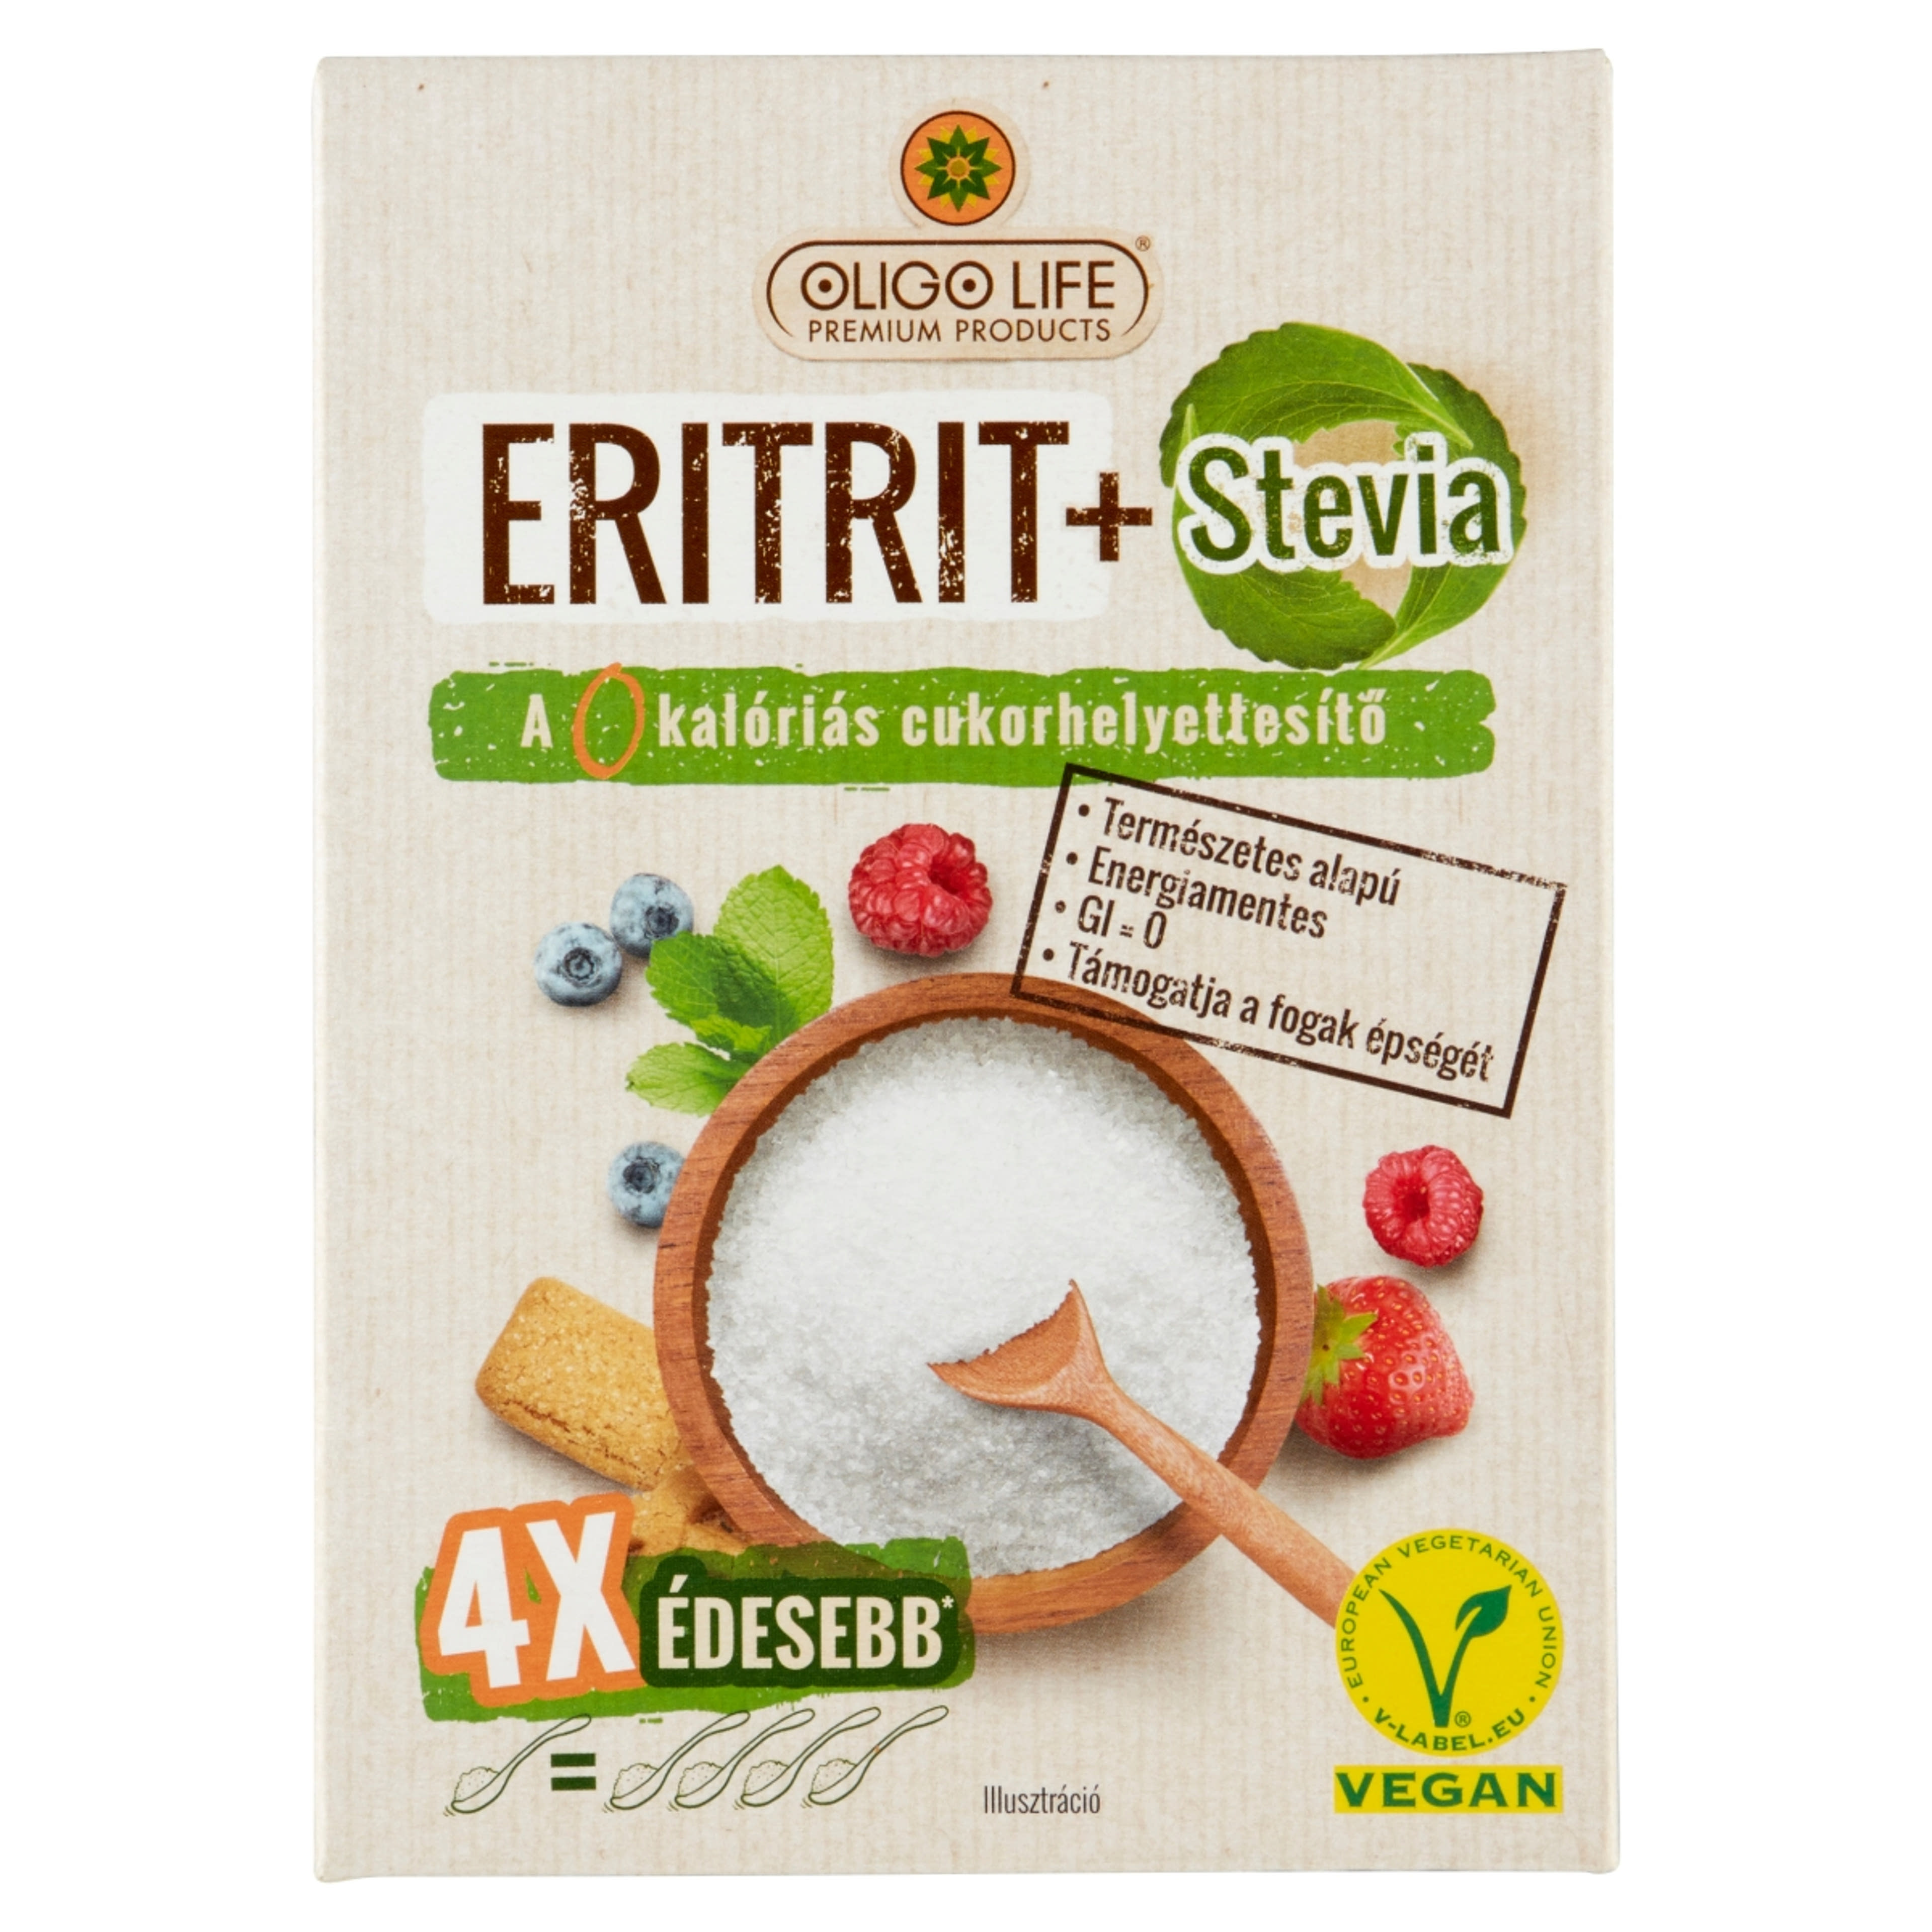 Oligo Life Eritrit & Stevia 4X édesebb édesítőszer - 275 g-1